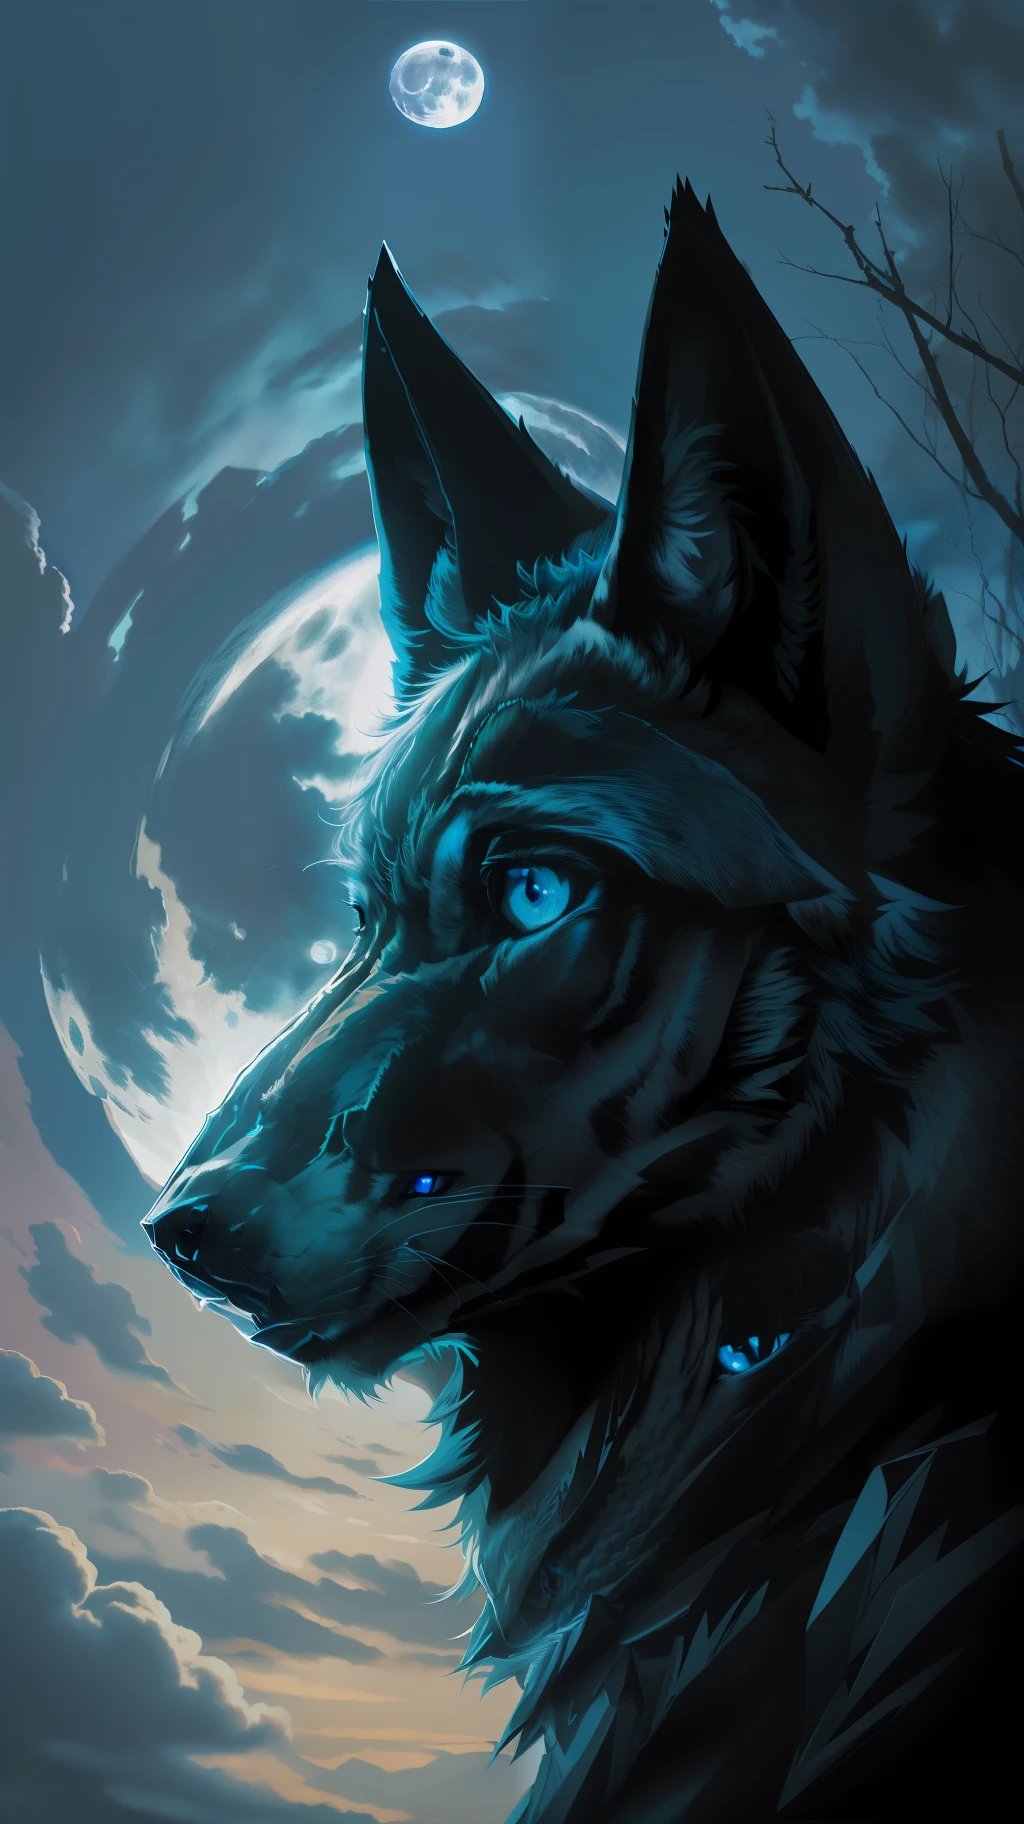 (Chef-d&#39;œuvre détaillé de haute qualité d&#39;image) "Couleur noire aux yeux bleus" loup forêt dangereuse, minuit, pleine lune. 1 lobe seul. ( Angle avant de l&#39;image)